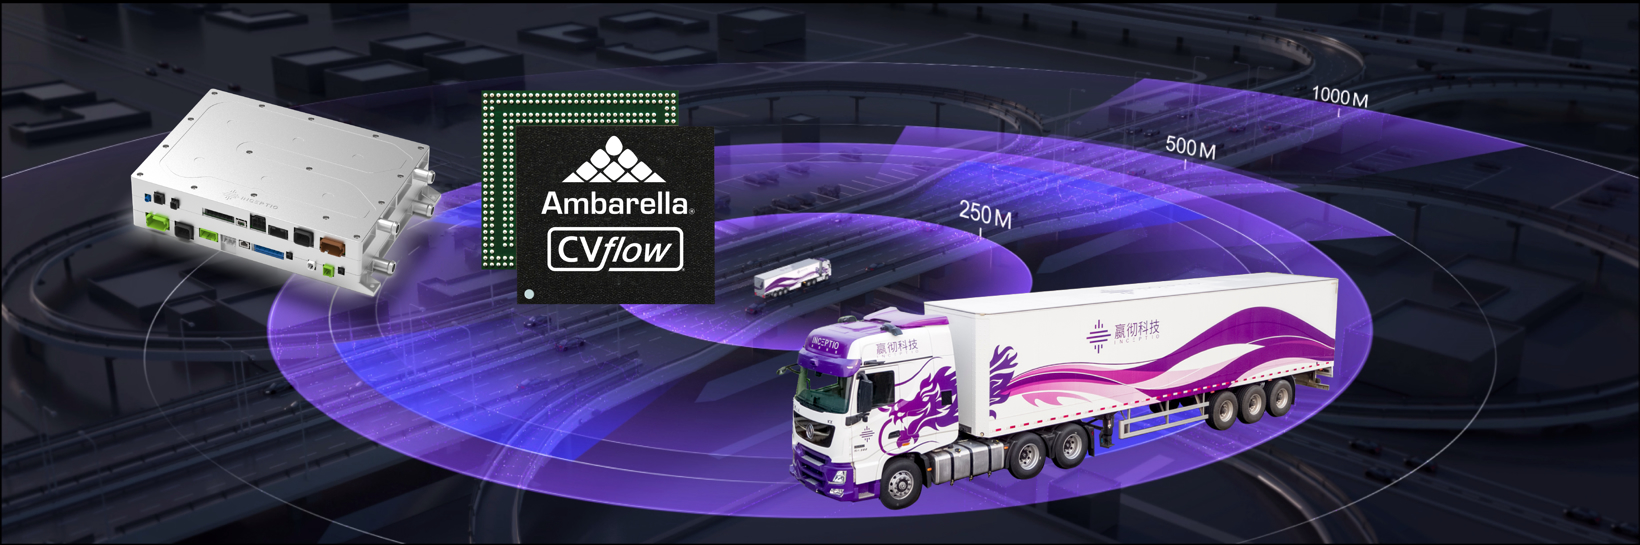 Inceptio and Ambarella collaborate to provide L3 autonomous driving